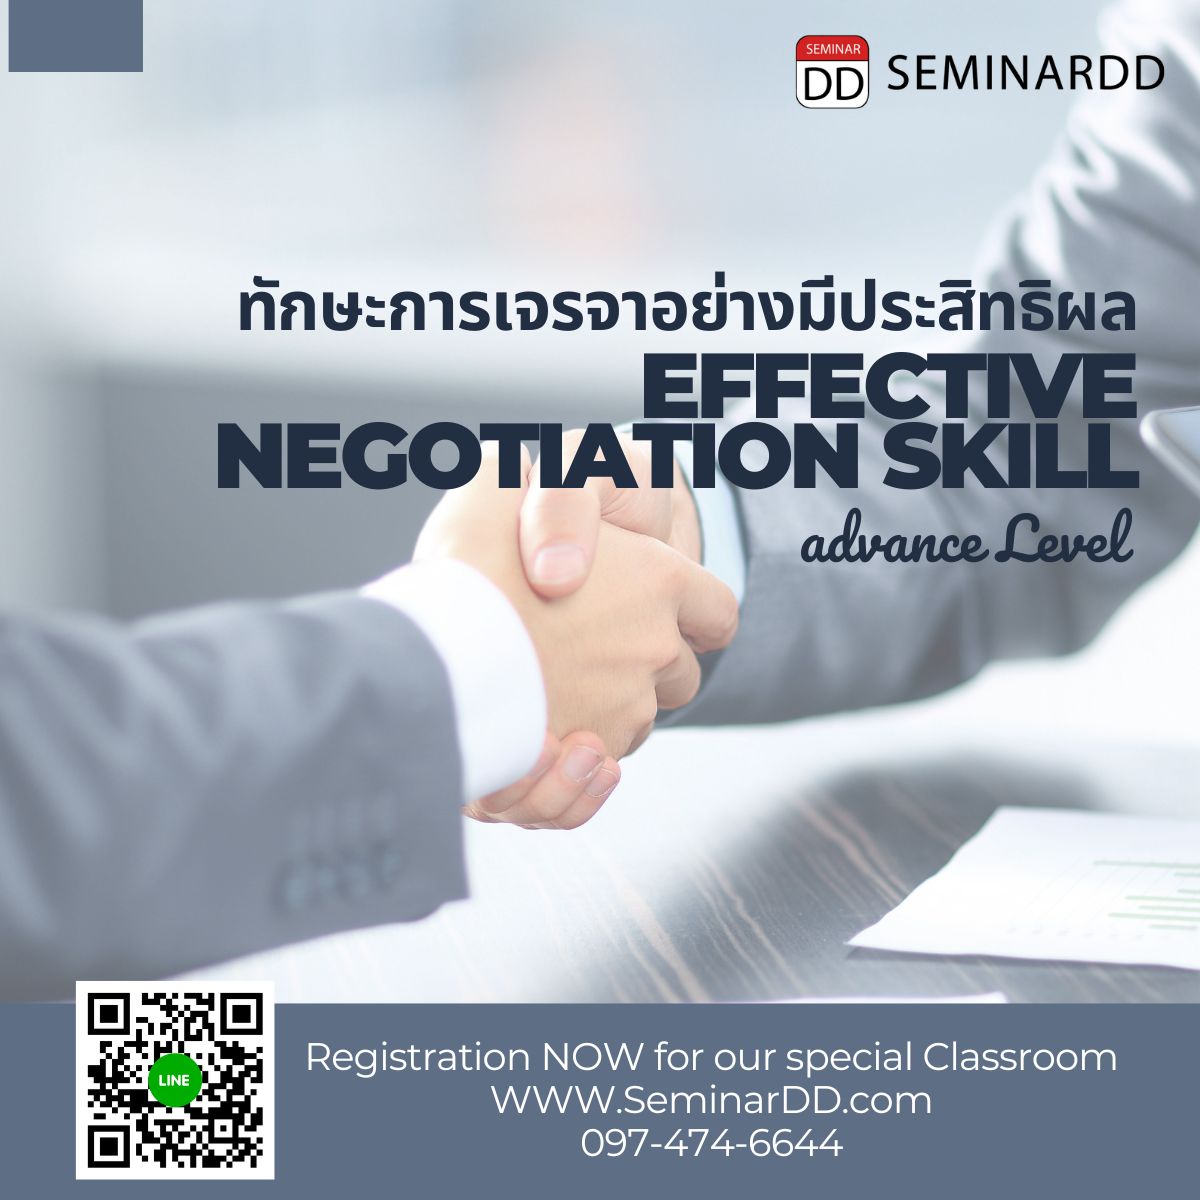 หลักสูตร “Effective Negotiation Skill” (ทักษะการเจรจา อย่างมีประสิทธิผล) Advance Level